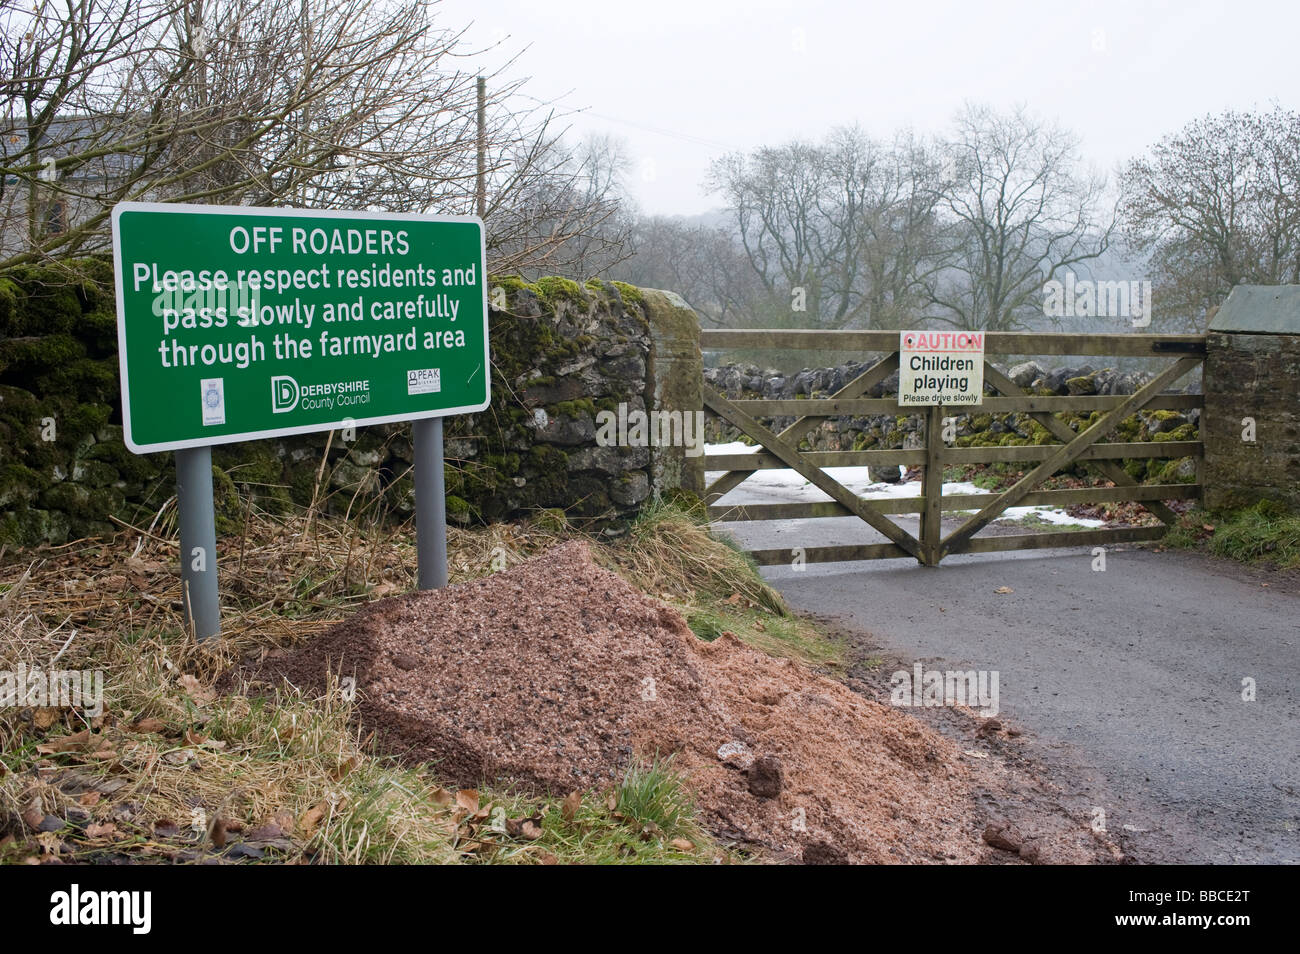 Derbyshire Grafschaftsrat Schild an einem Land Straße anfordern, die off roader langsam und vorsichtig durch den Hof zu übergeben Stockfoto